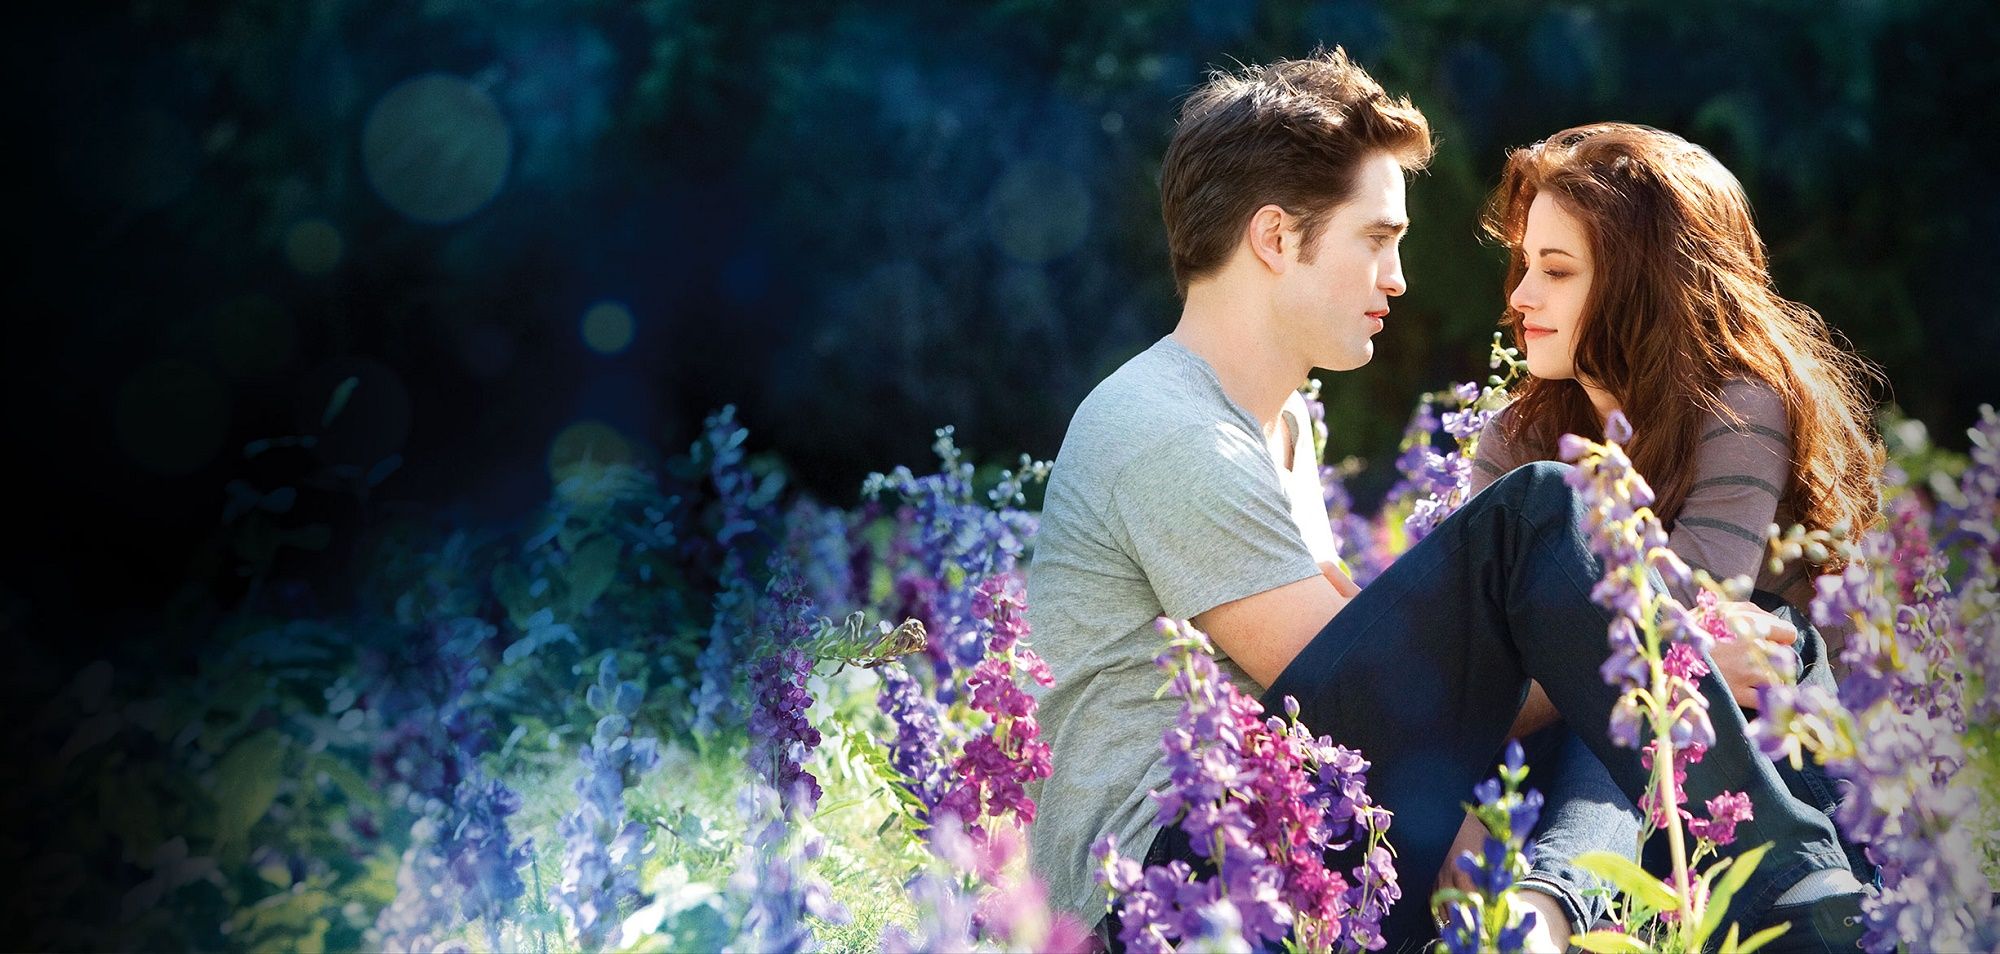 Nel nuovo libro di Twilight Edward e Bella cambiano sesso